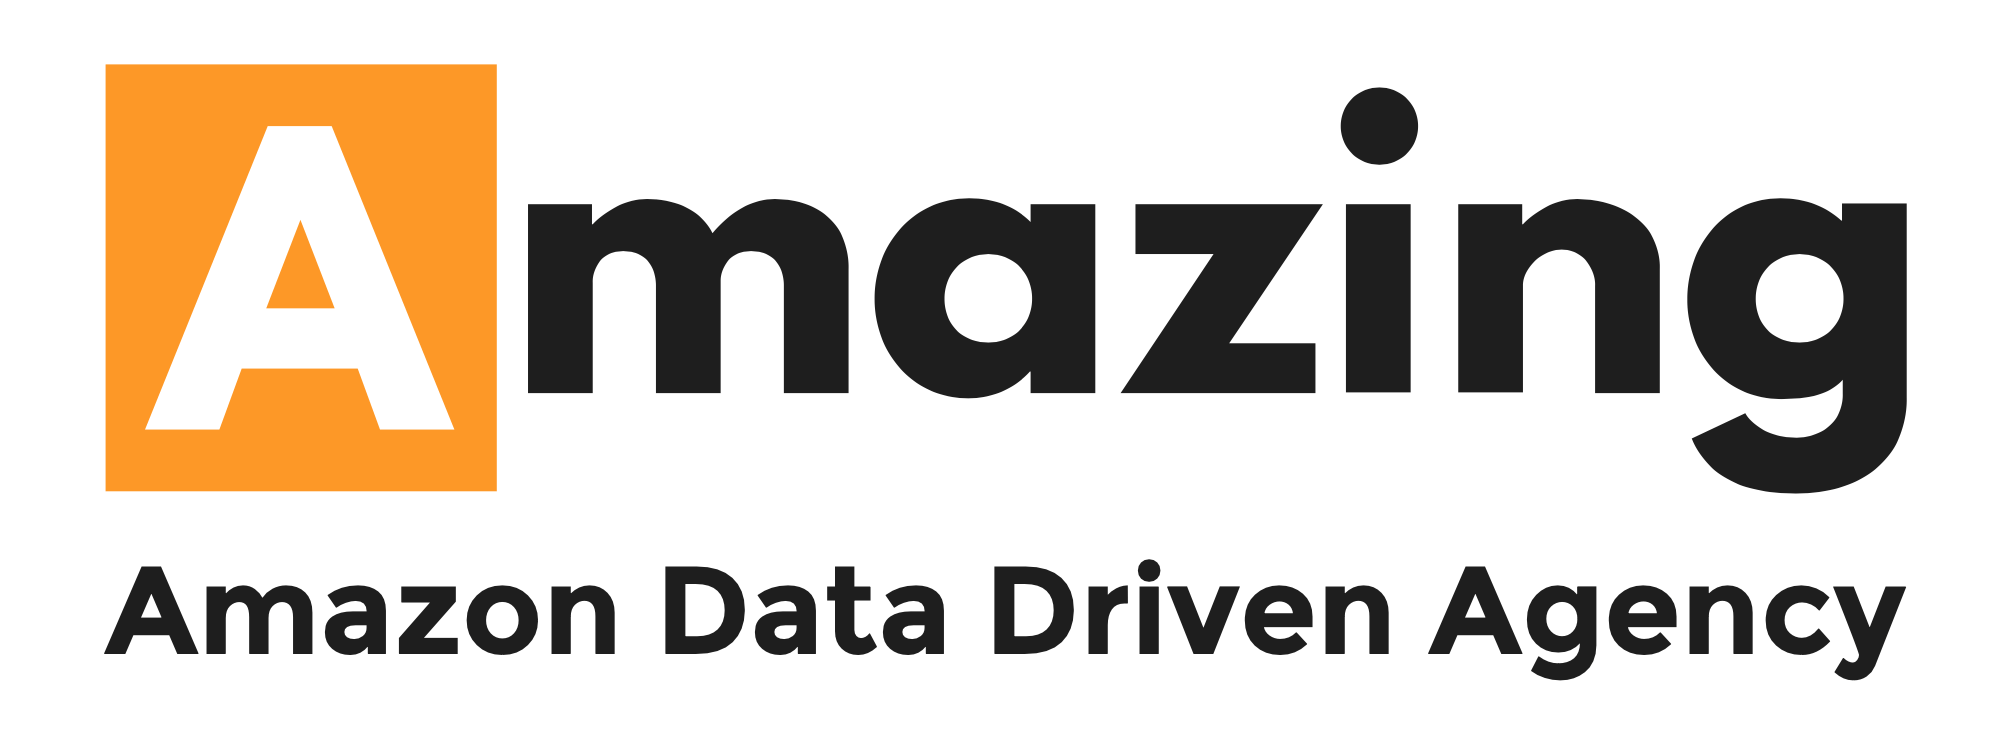 Logo Amazon data driven agency